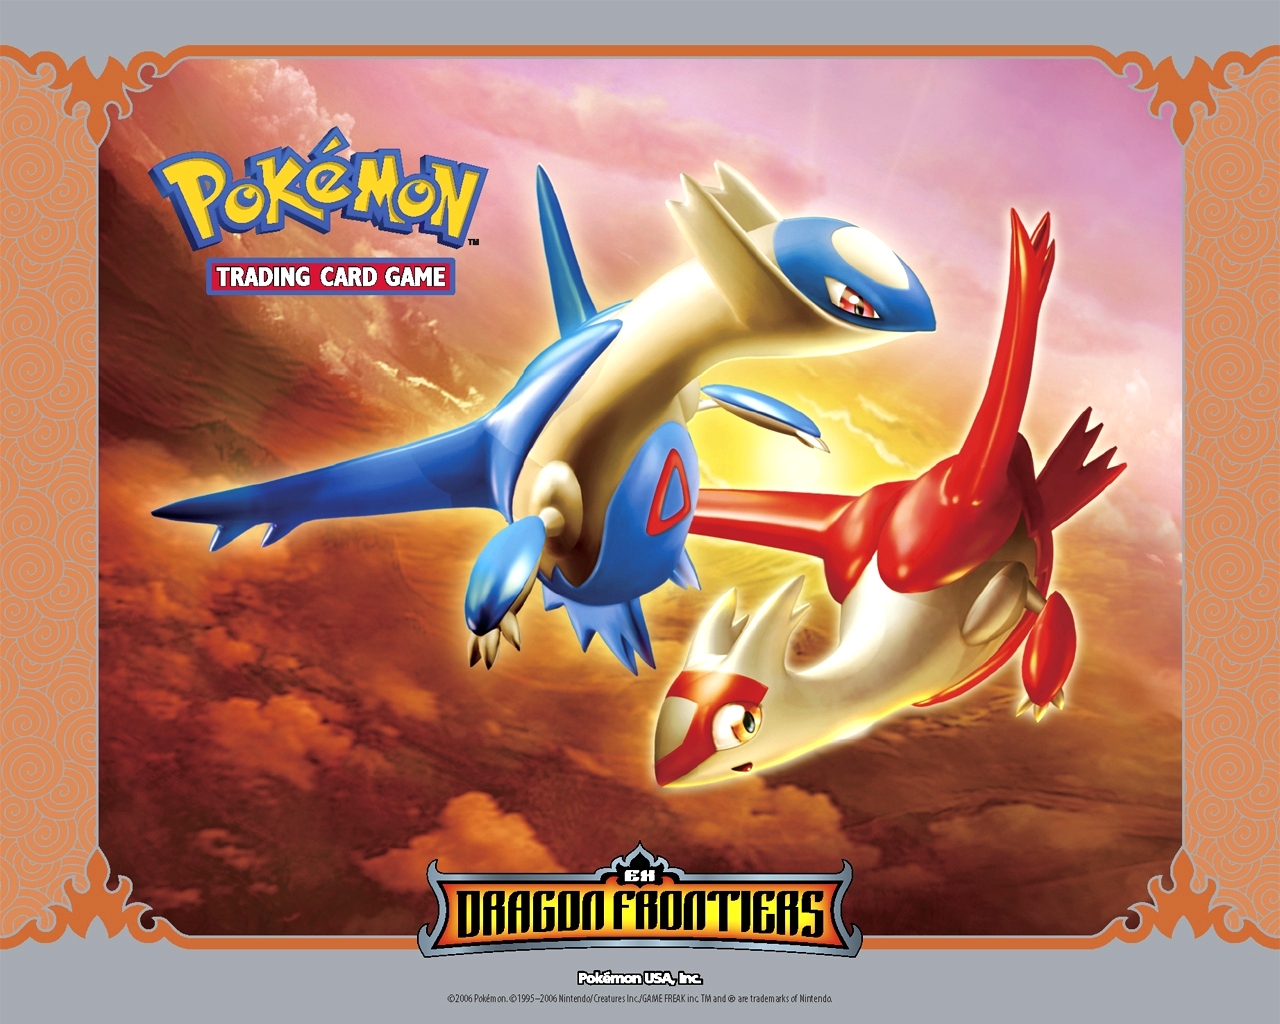 Pokemon desktop wallpaper number 3 1280 x 1024 pixels